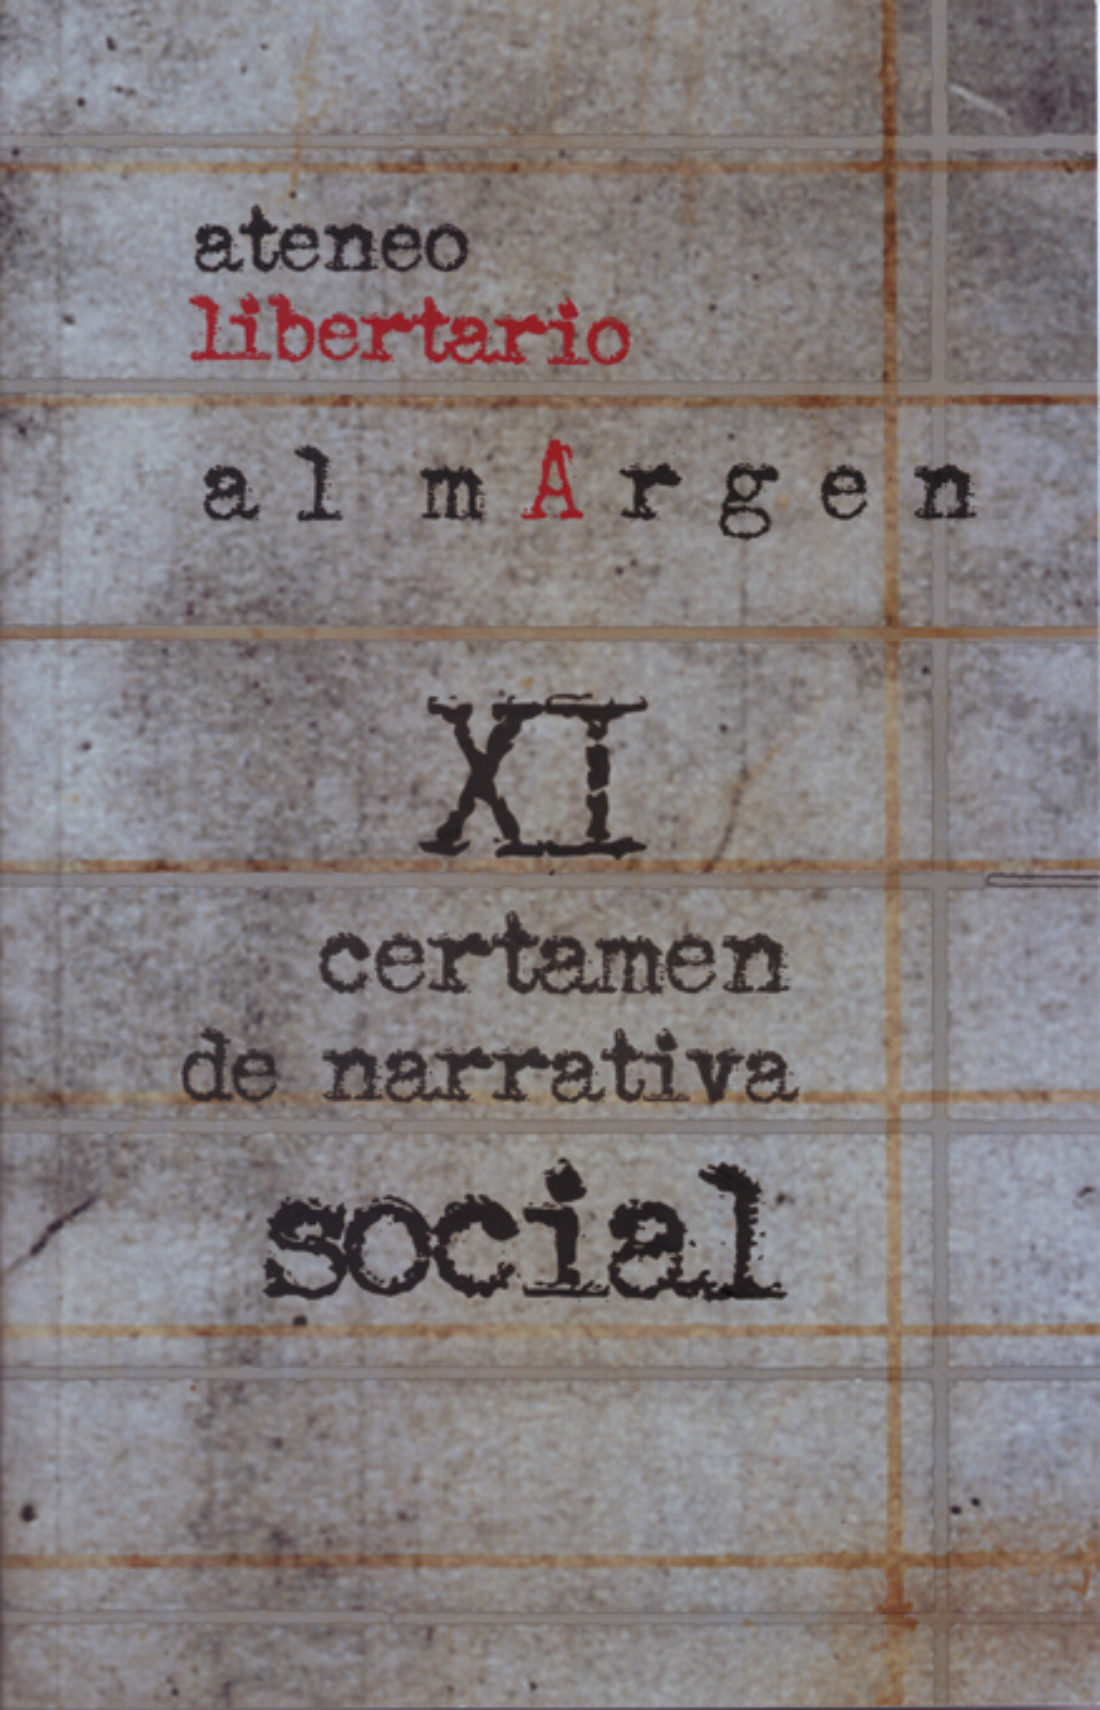 Convocado el XII Certamen de Narrativa Social Al Margen